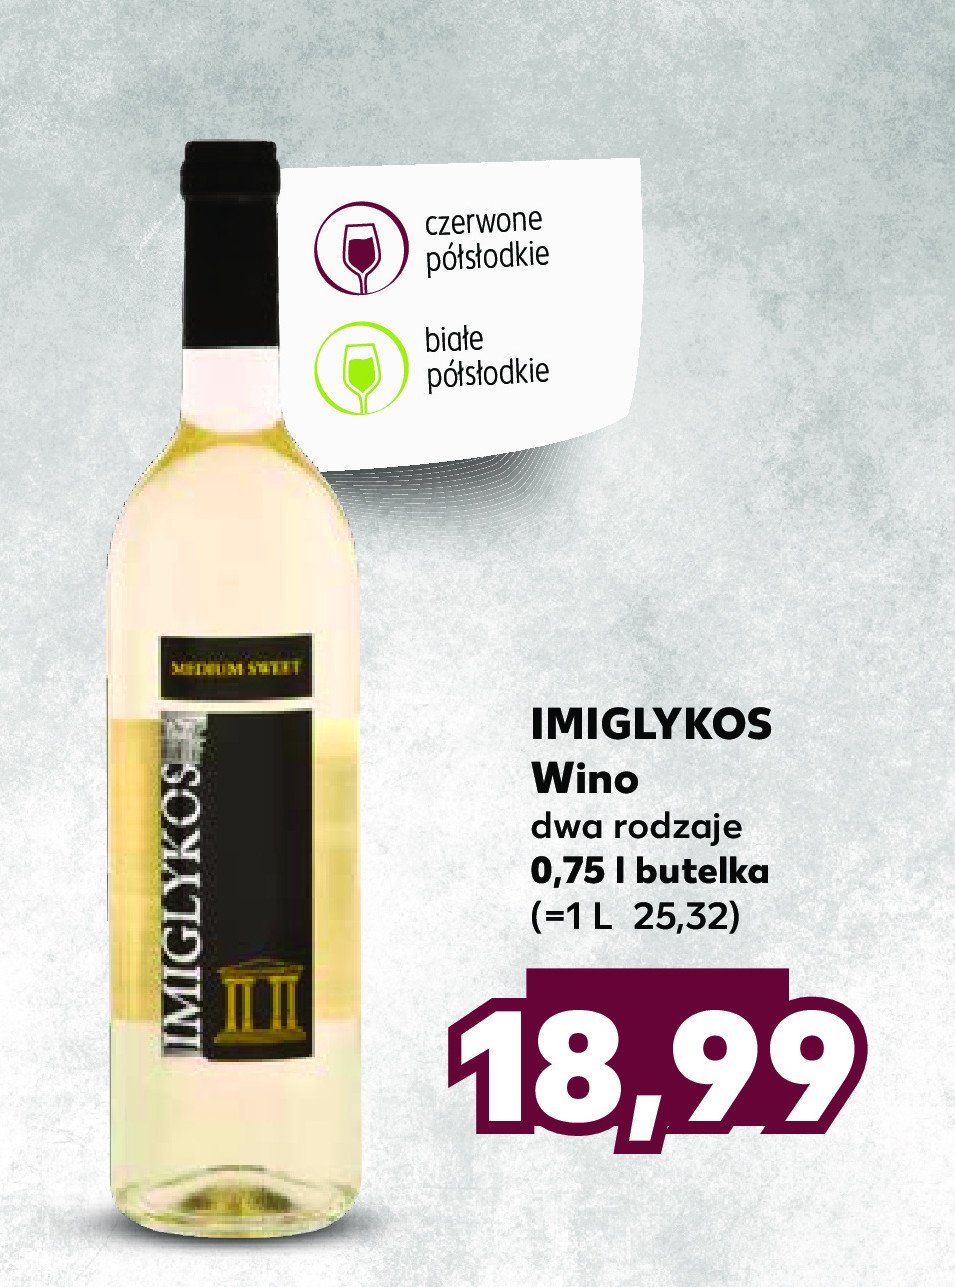 Wino Imiglykos melritos medium sweet white promocja